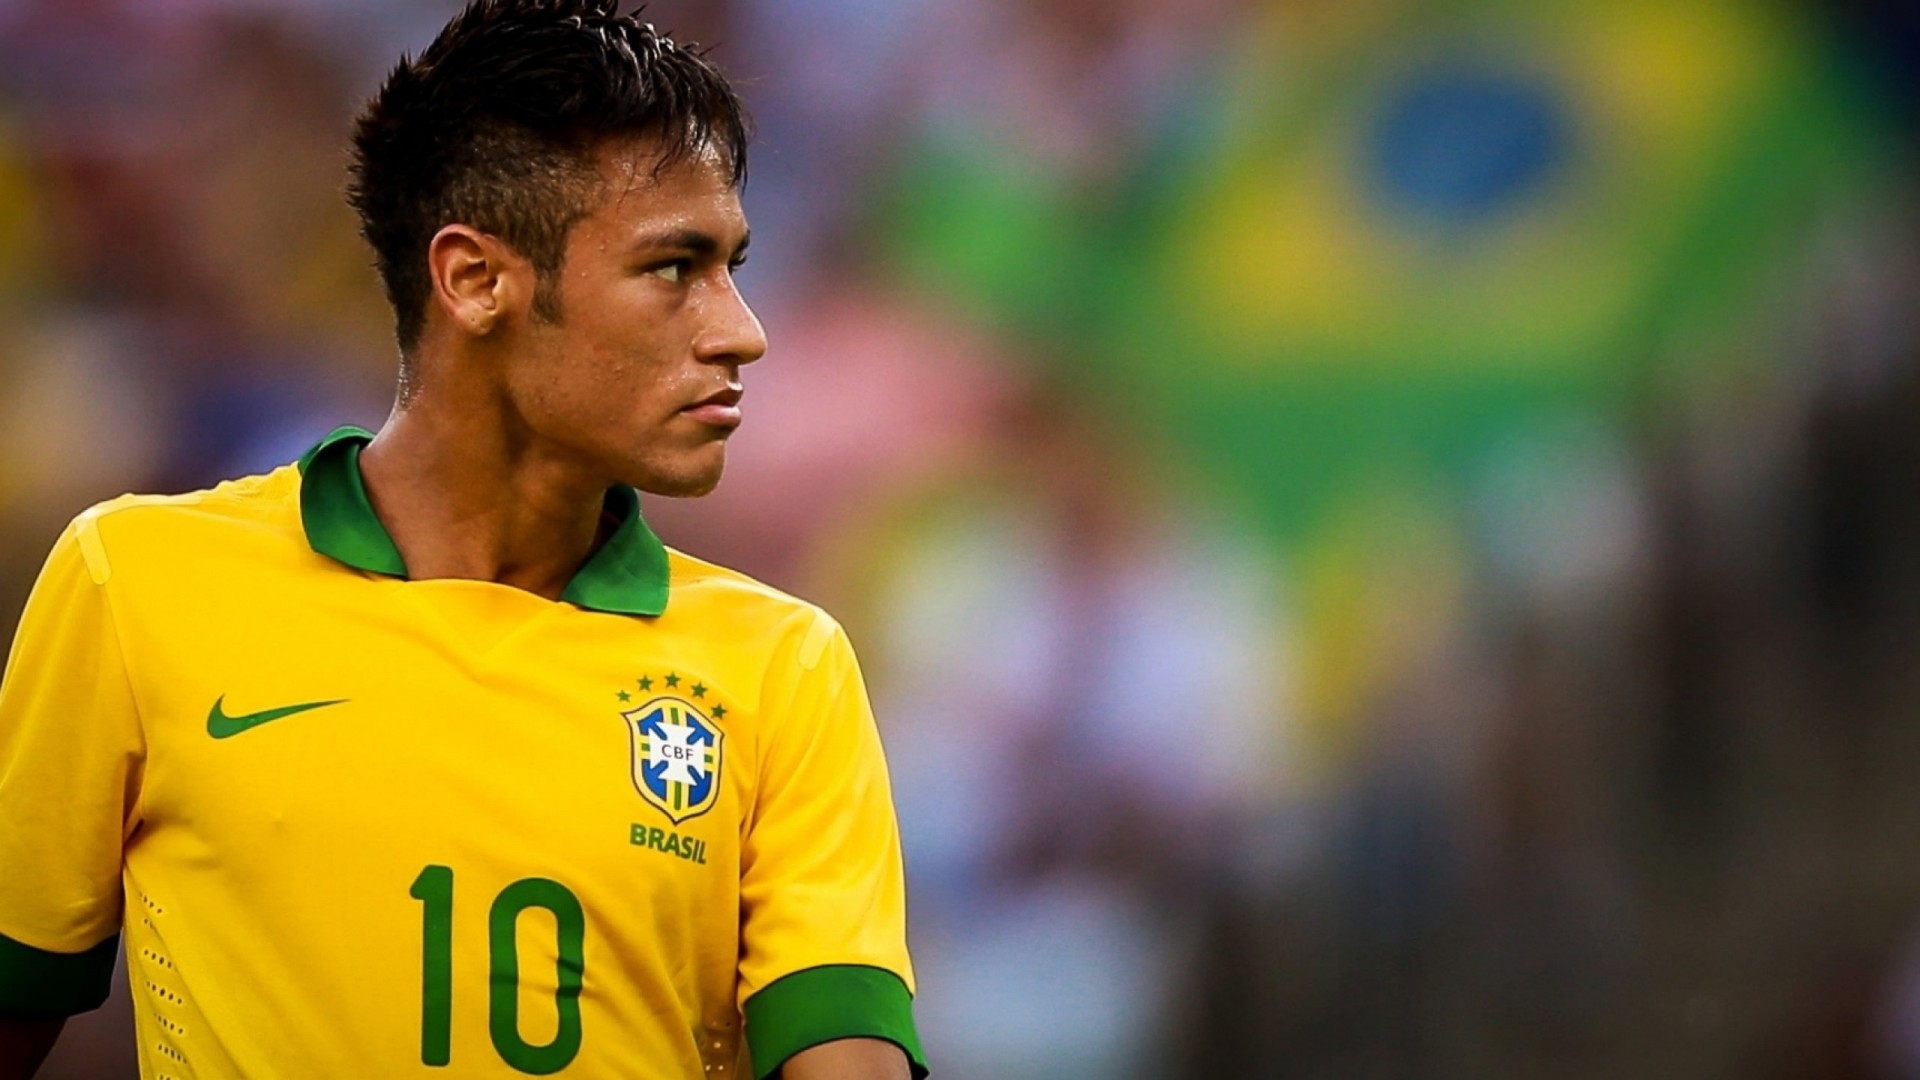 neymar wallpaper,player,football player,soccer player,team sport,sports equipment